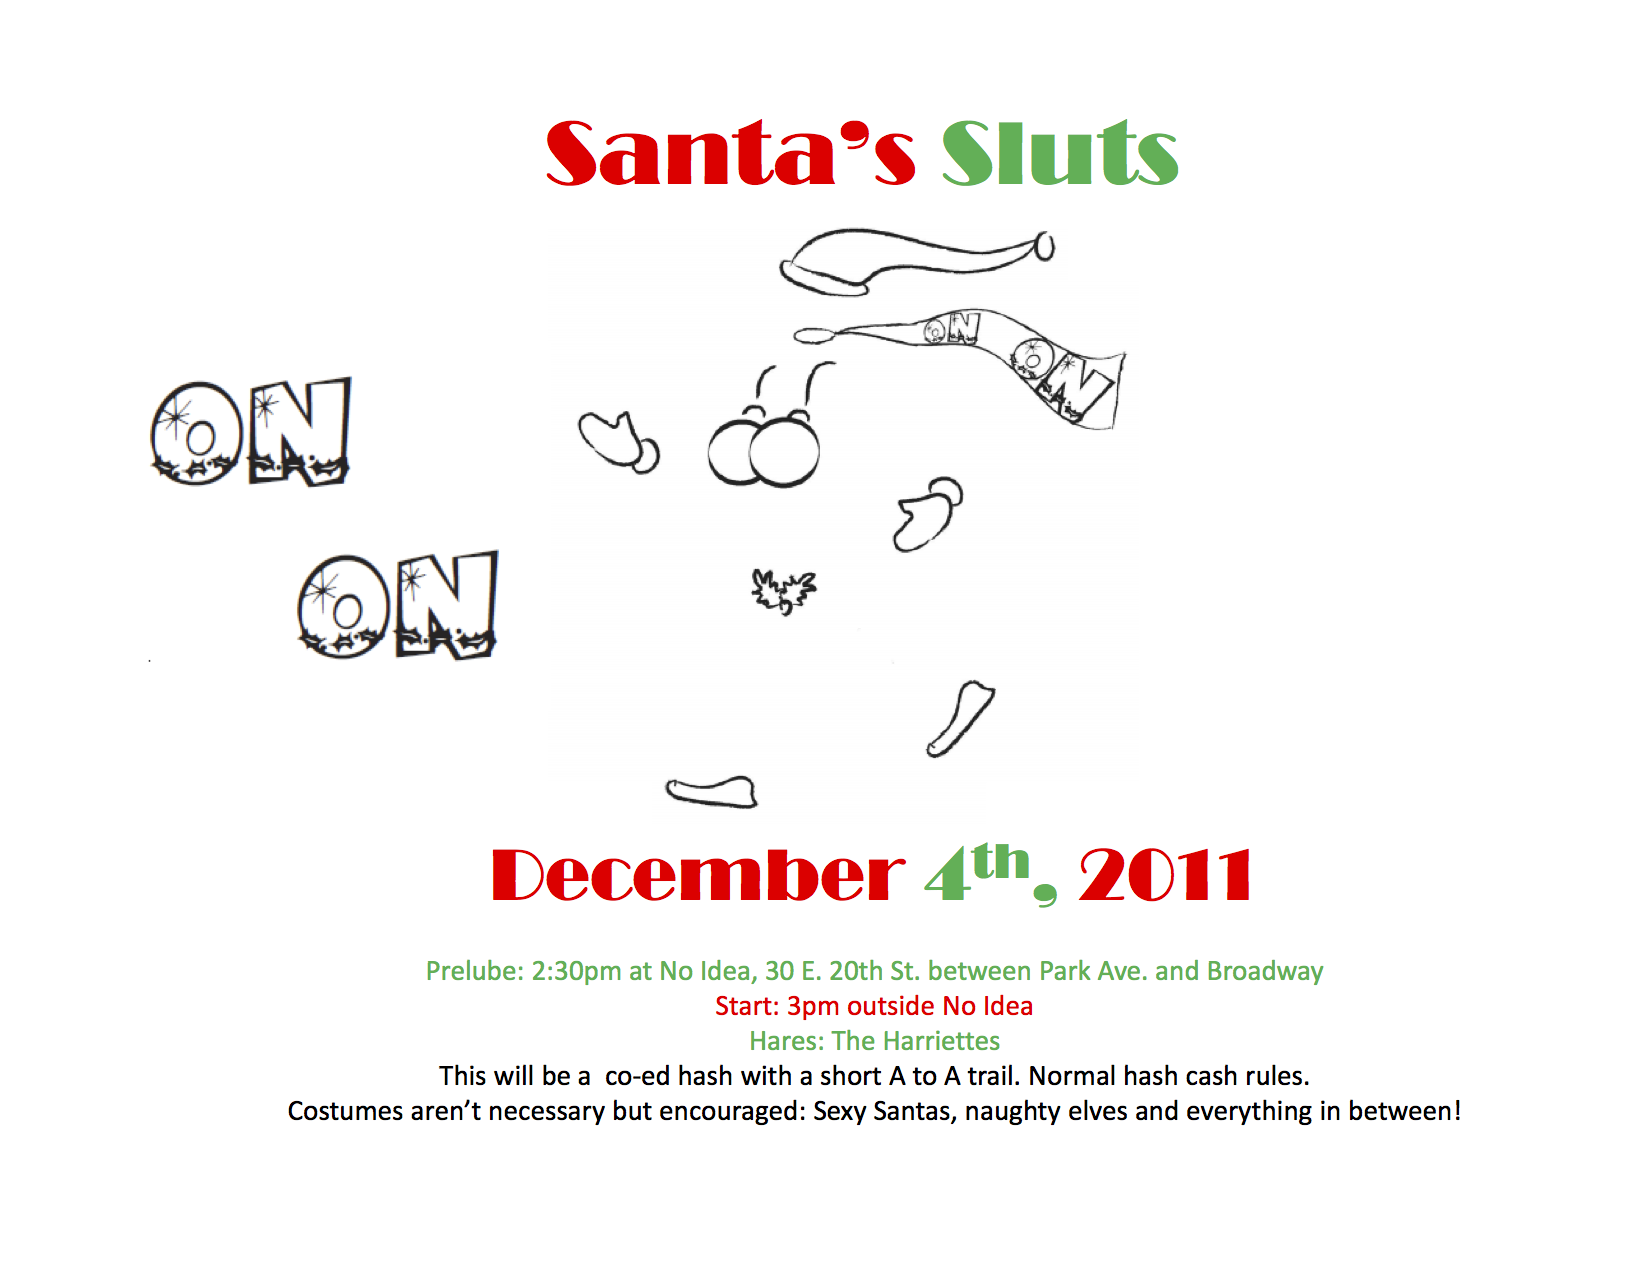 Santa’s Sluts December 4th 2011